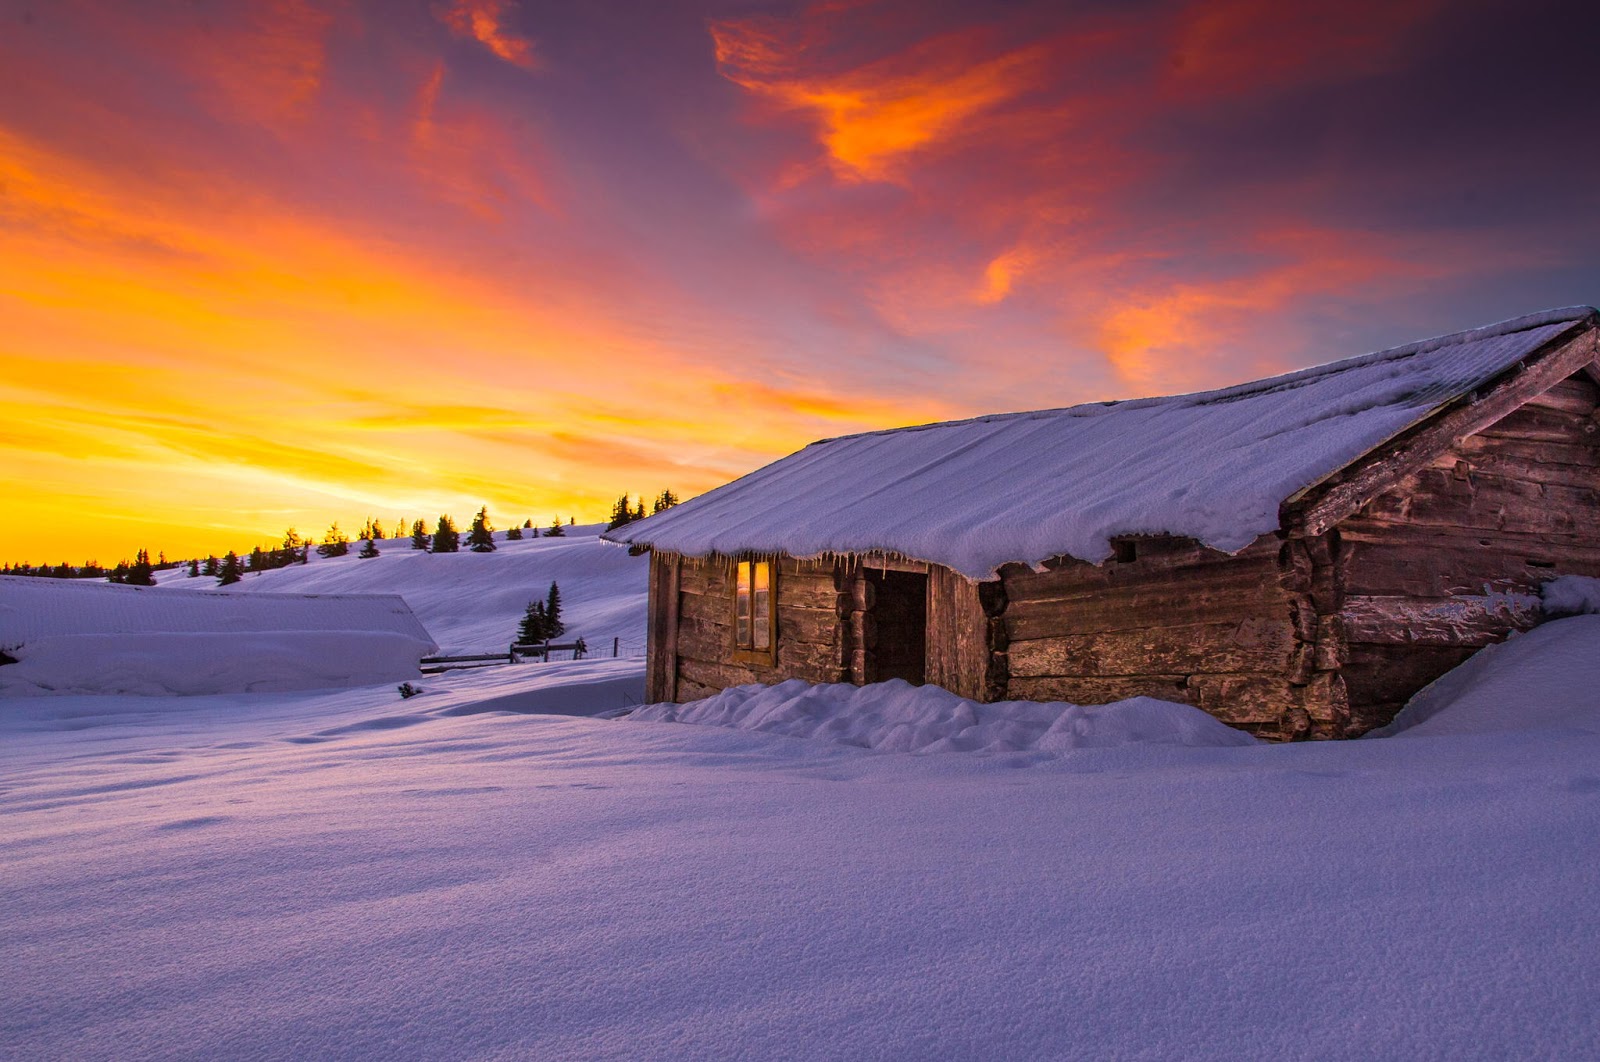 Ձմեռային գեղեցիկ լուսանկար. Նորվեգիայի...